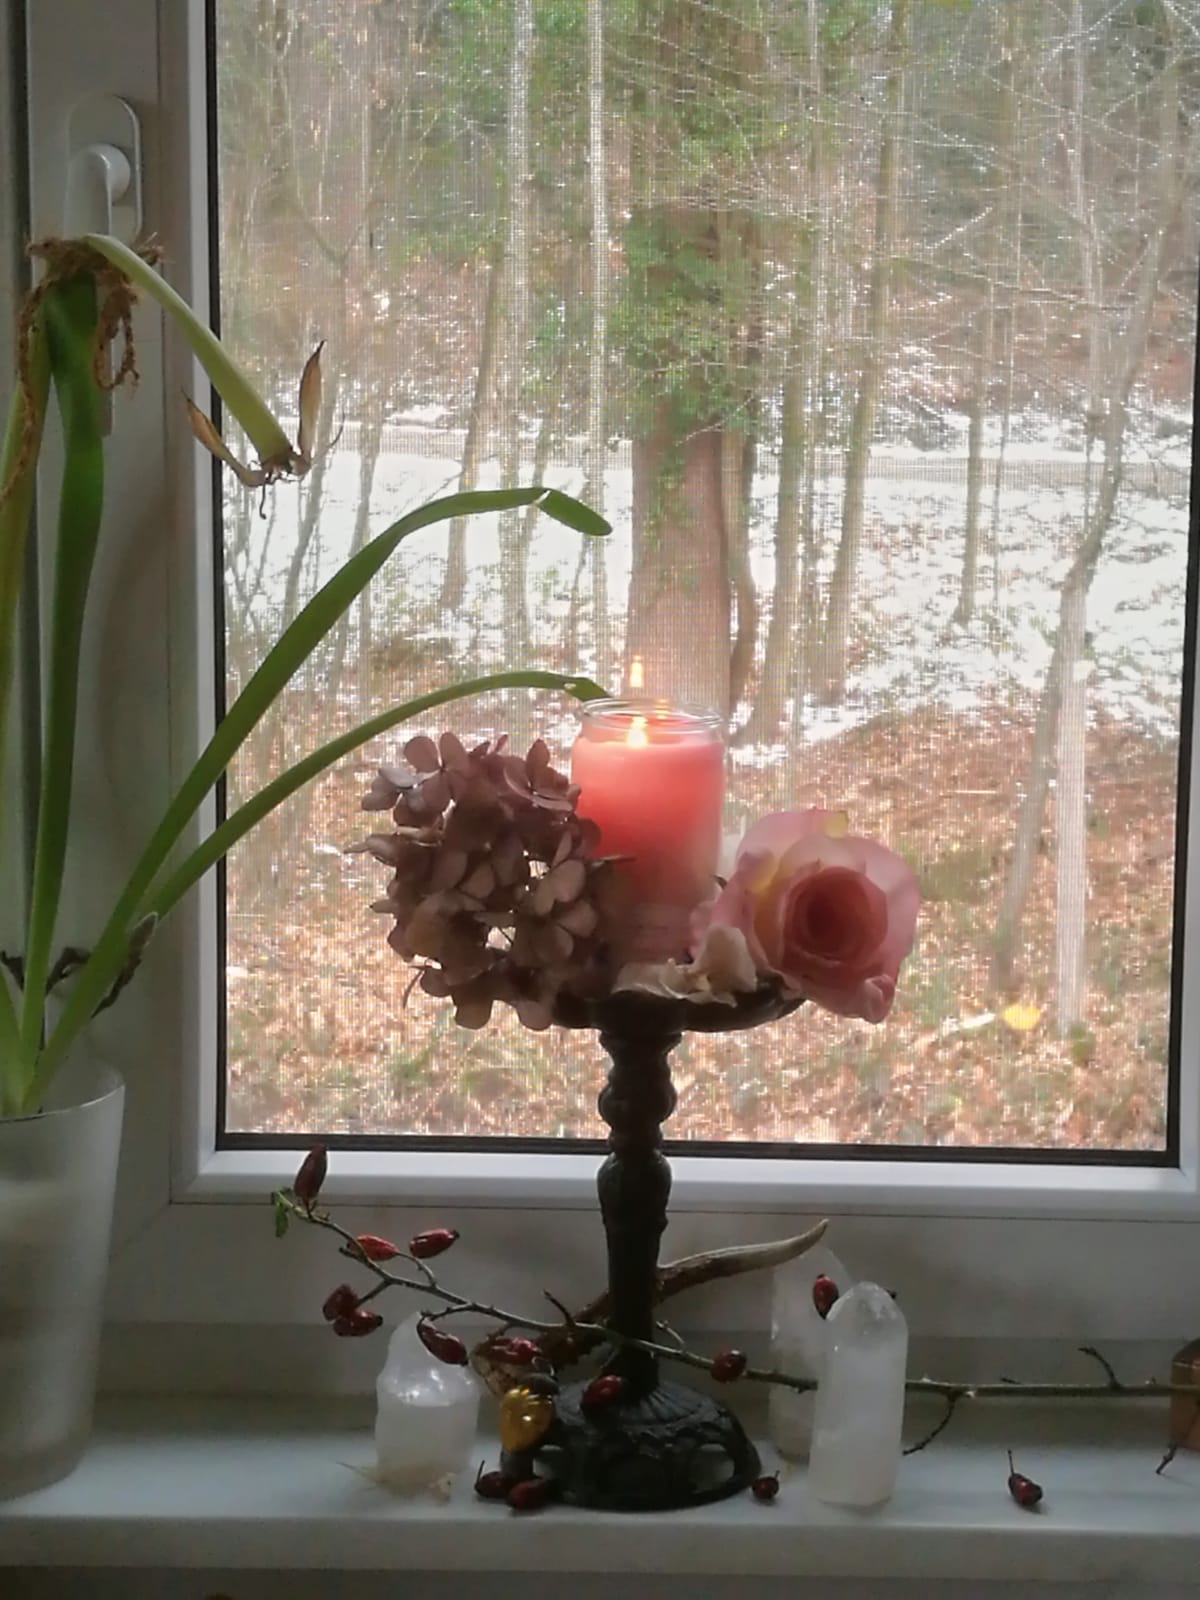 Brennende Kerze auf einem mit Blumen geschmückten Kerzenhalter auf einer Fensterbank